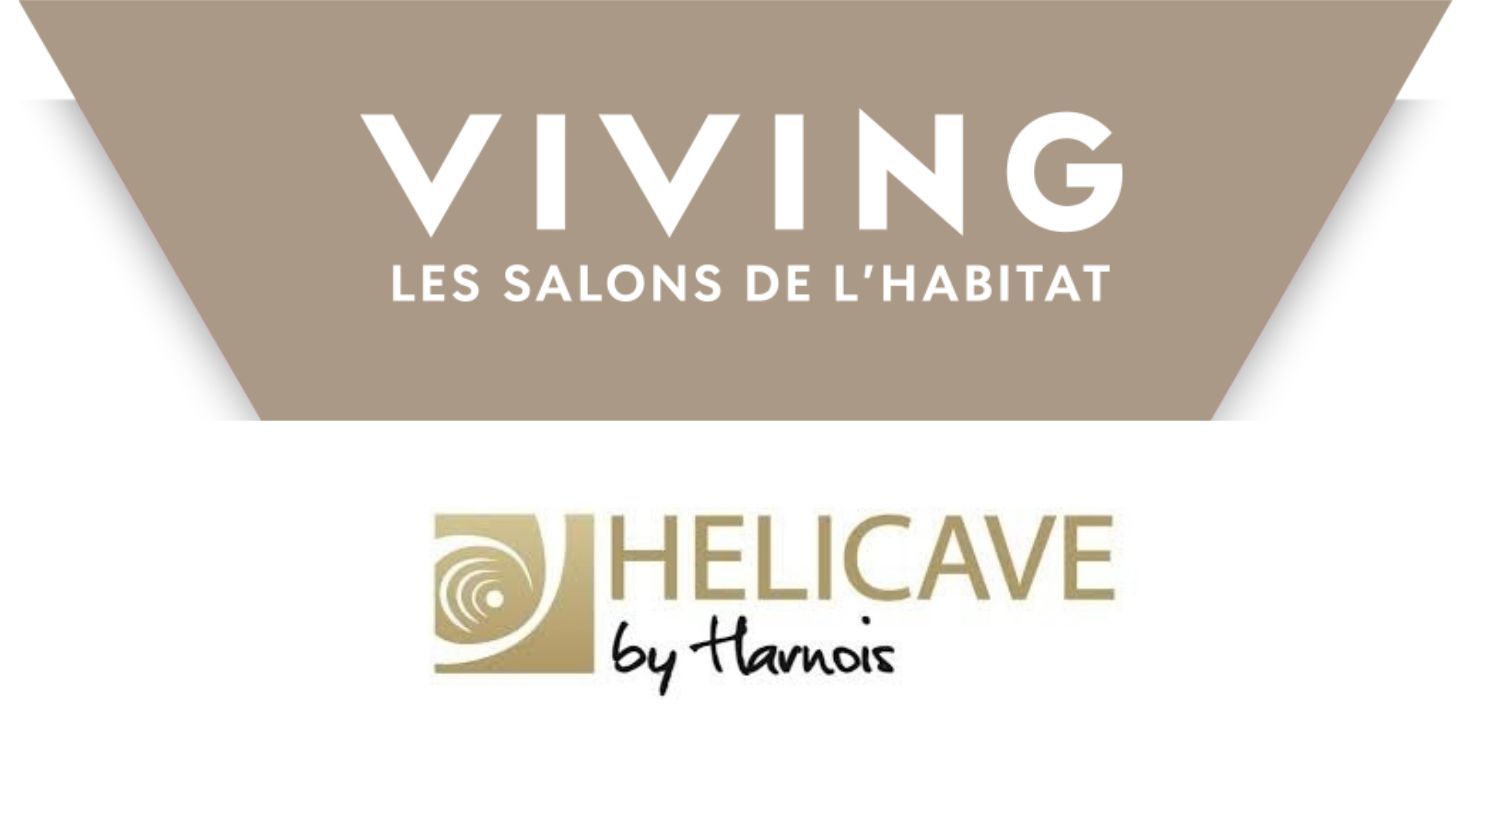 Hélicave participe aux salons Viving 